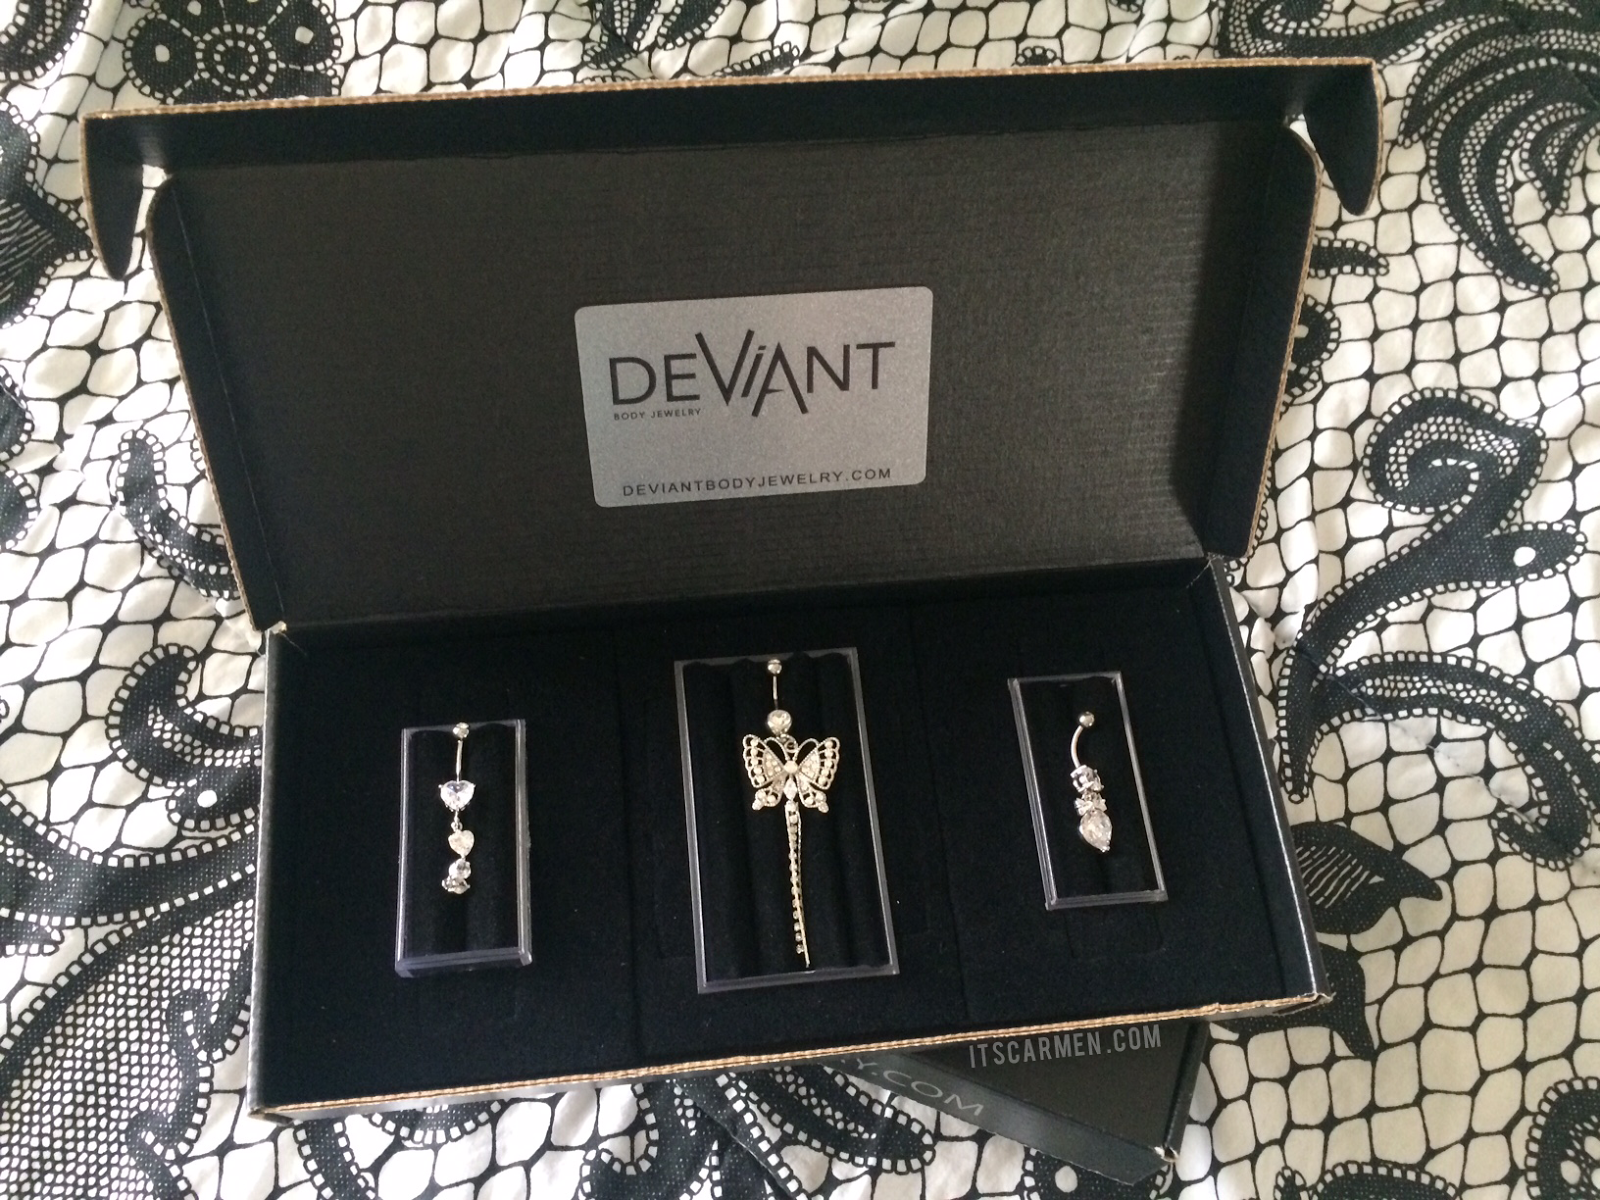 deviant body jewelry